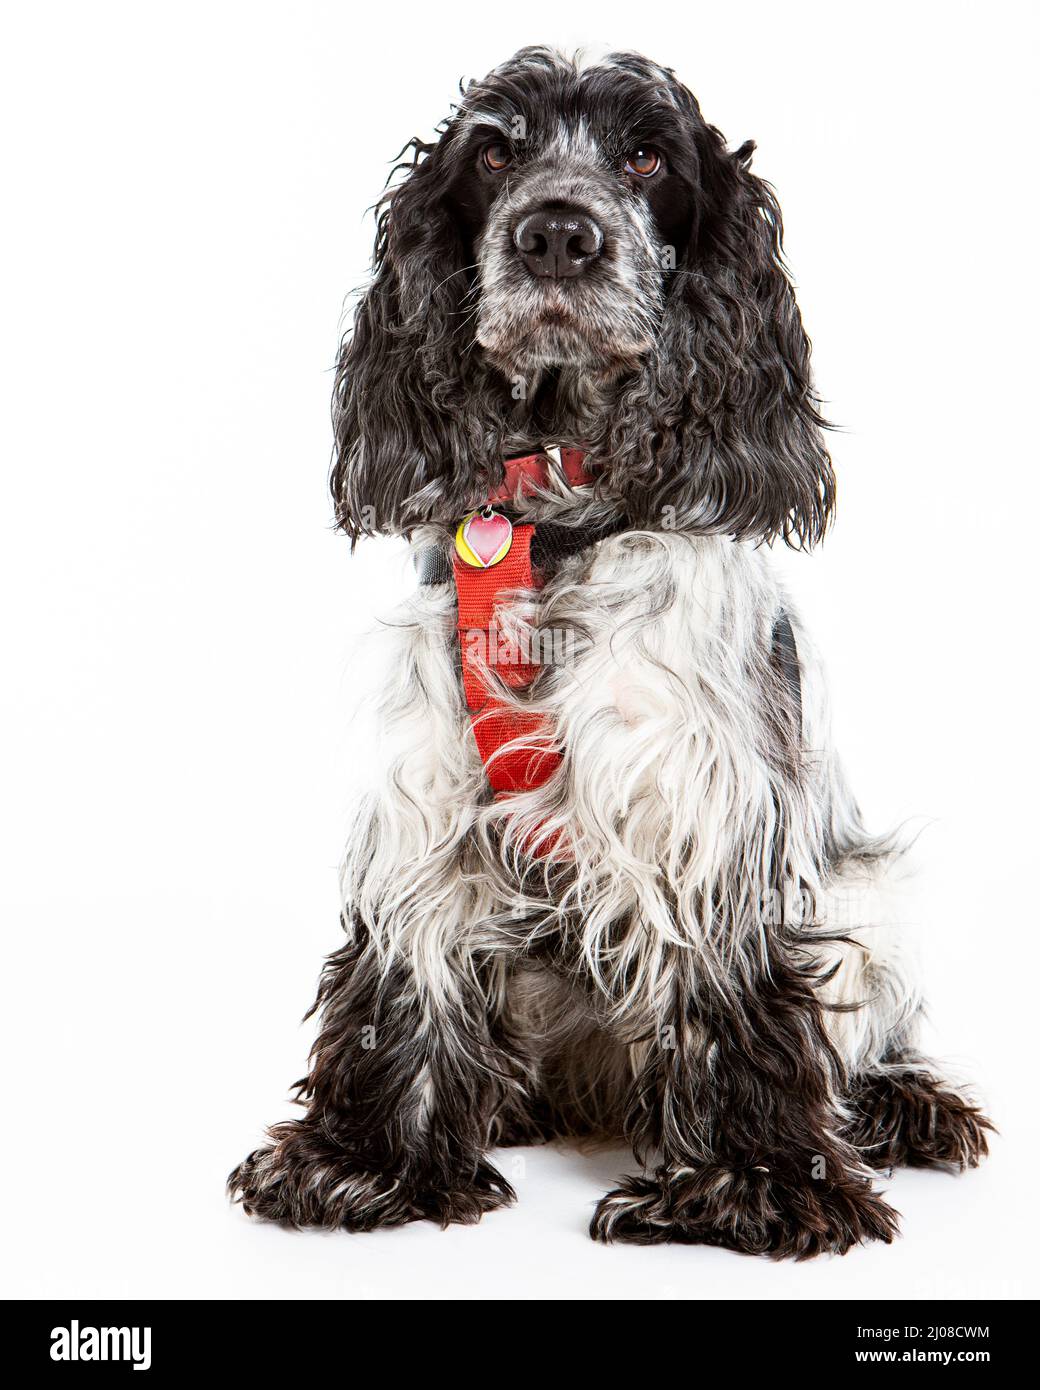 Englisch Springer Spaniel. Ganzkörper-Studioaufnahme eines englischen Springer Spaniel-Hundes vor weißem Hintergrund. Stockfoto